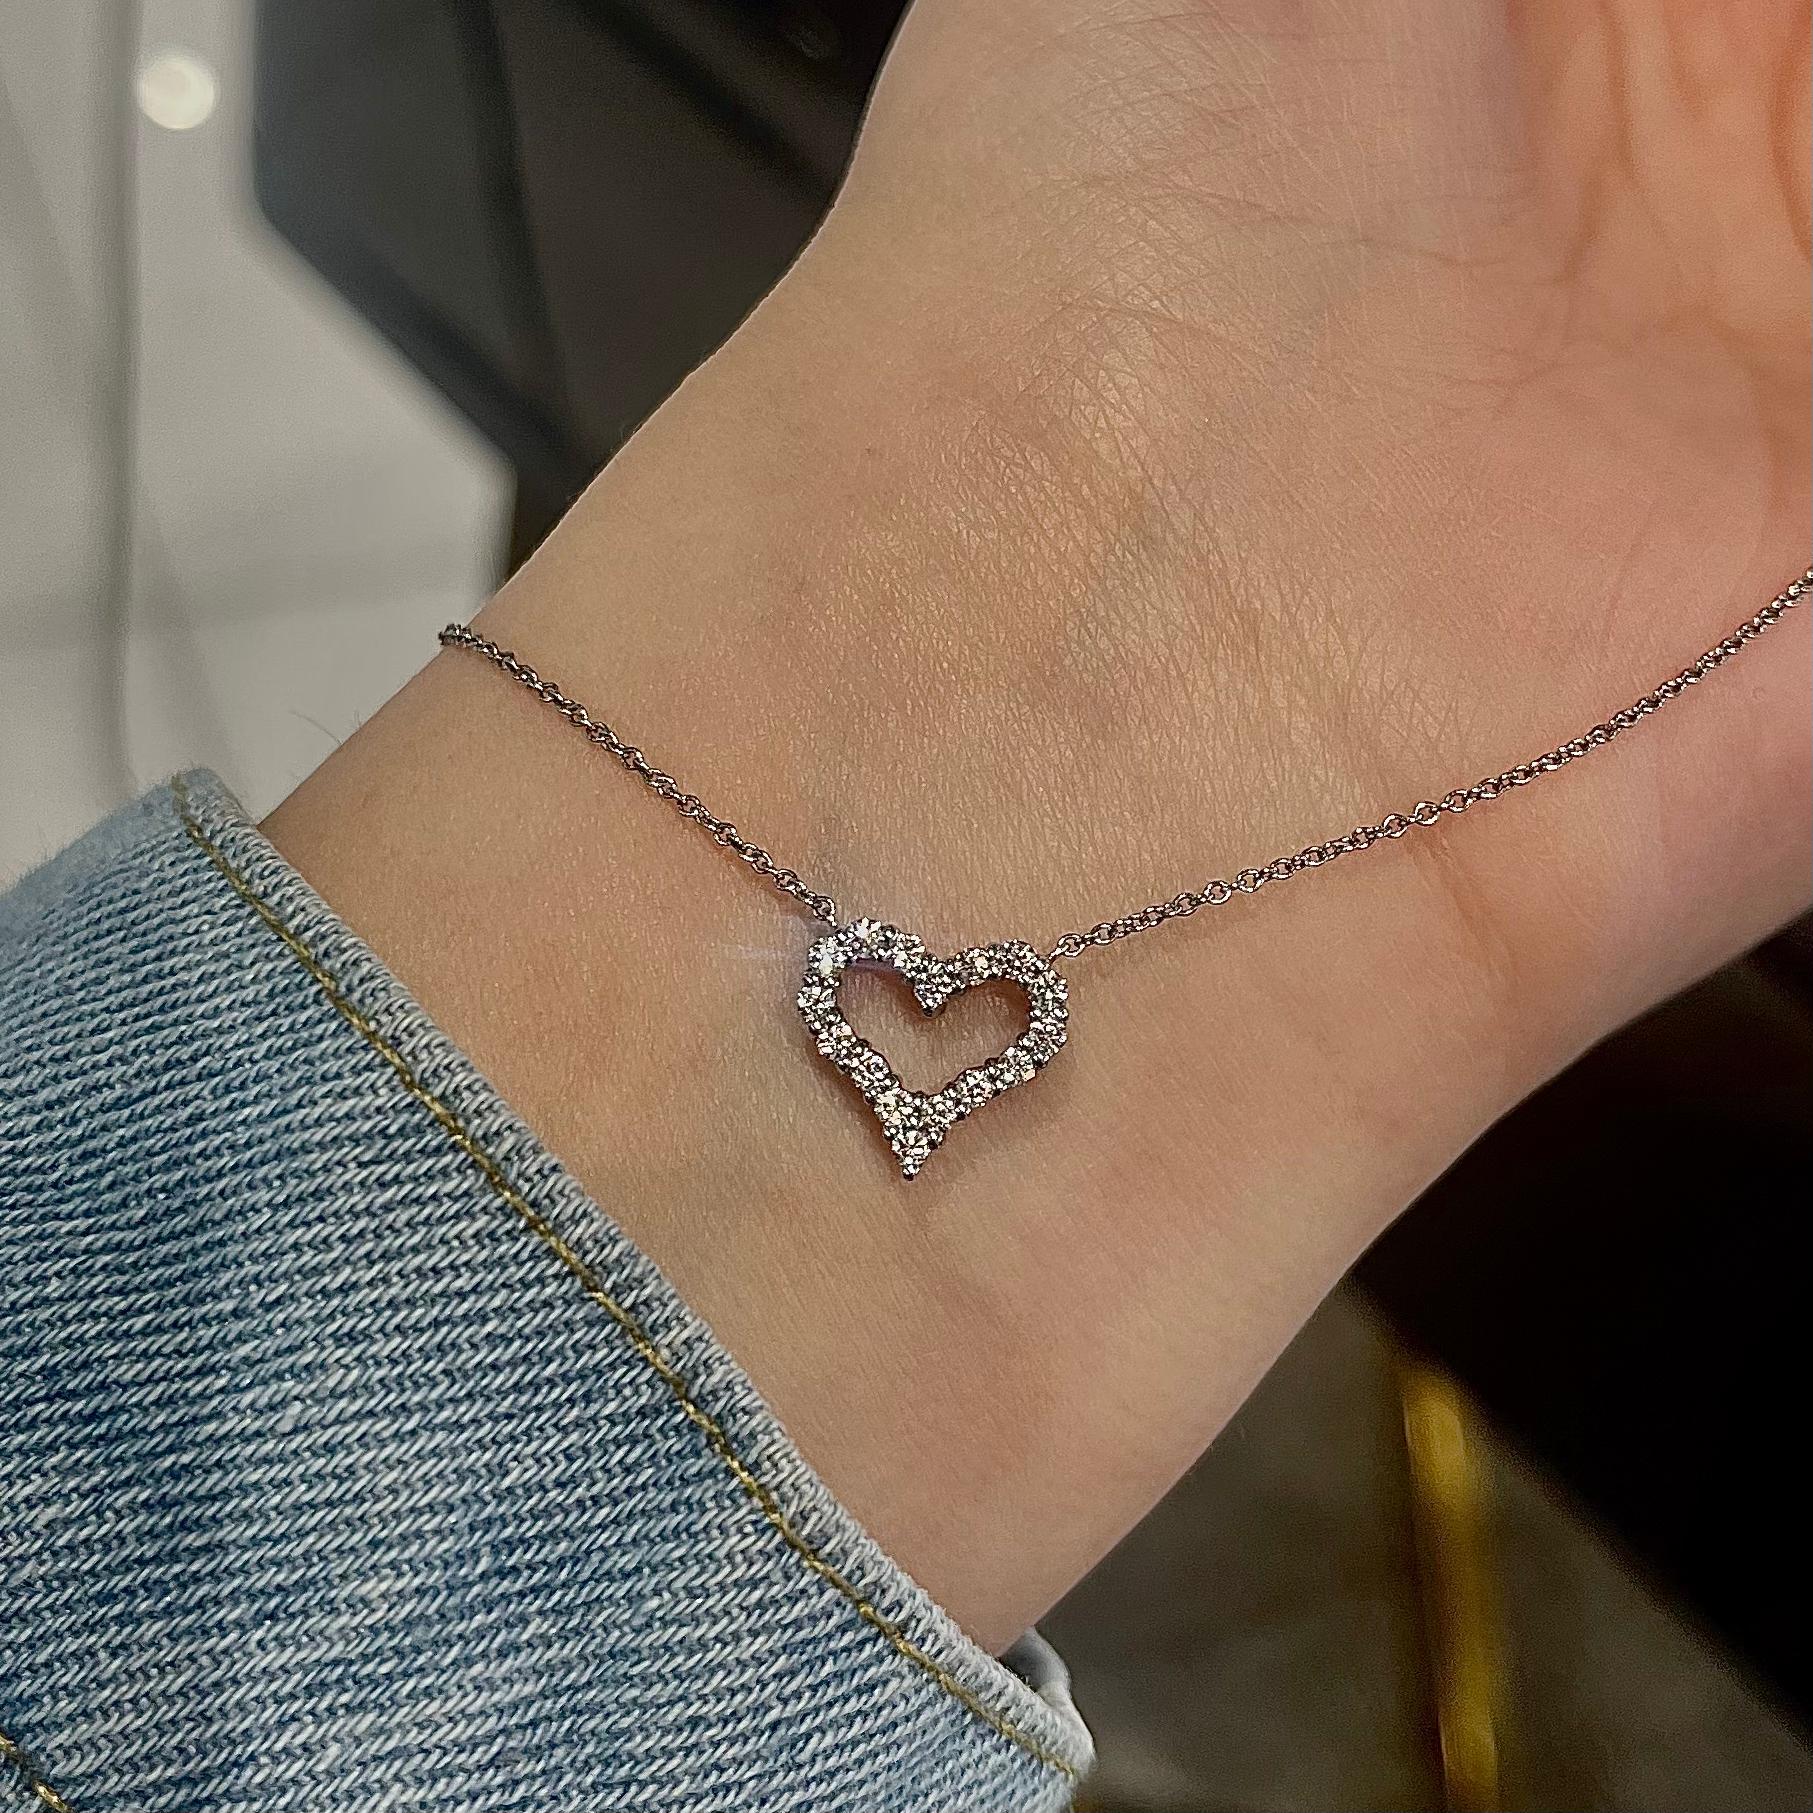 tiffany diamond heart necklace